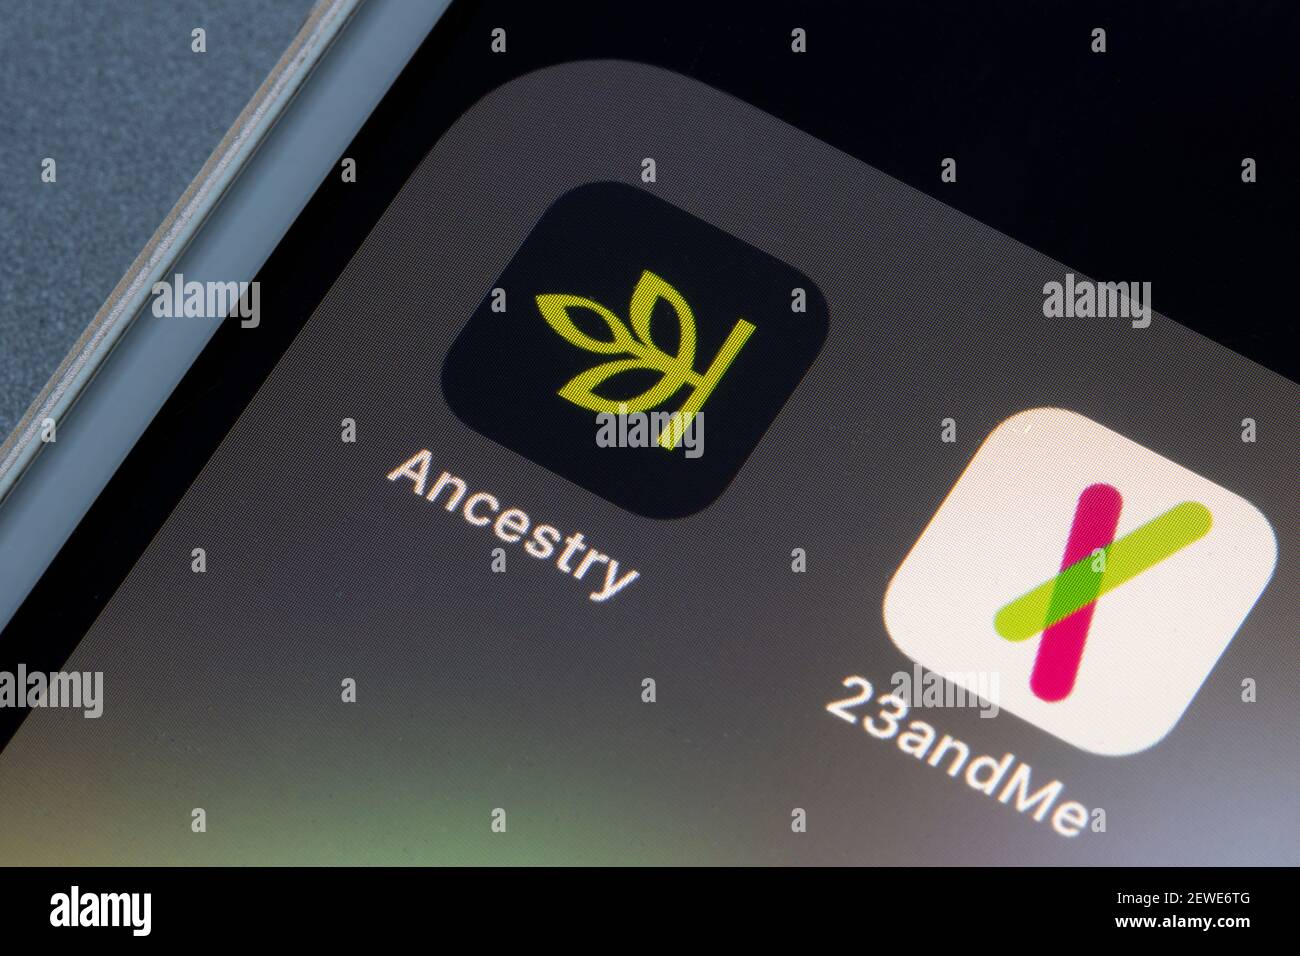 Acestry und 23andMe mobile Apps sind auf einem iPhone am 1. März 2021 zu sehen. Beide Unternehmen bieten persönliche genetische DNA-Tests einschließlich... Stockfoto